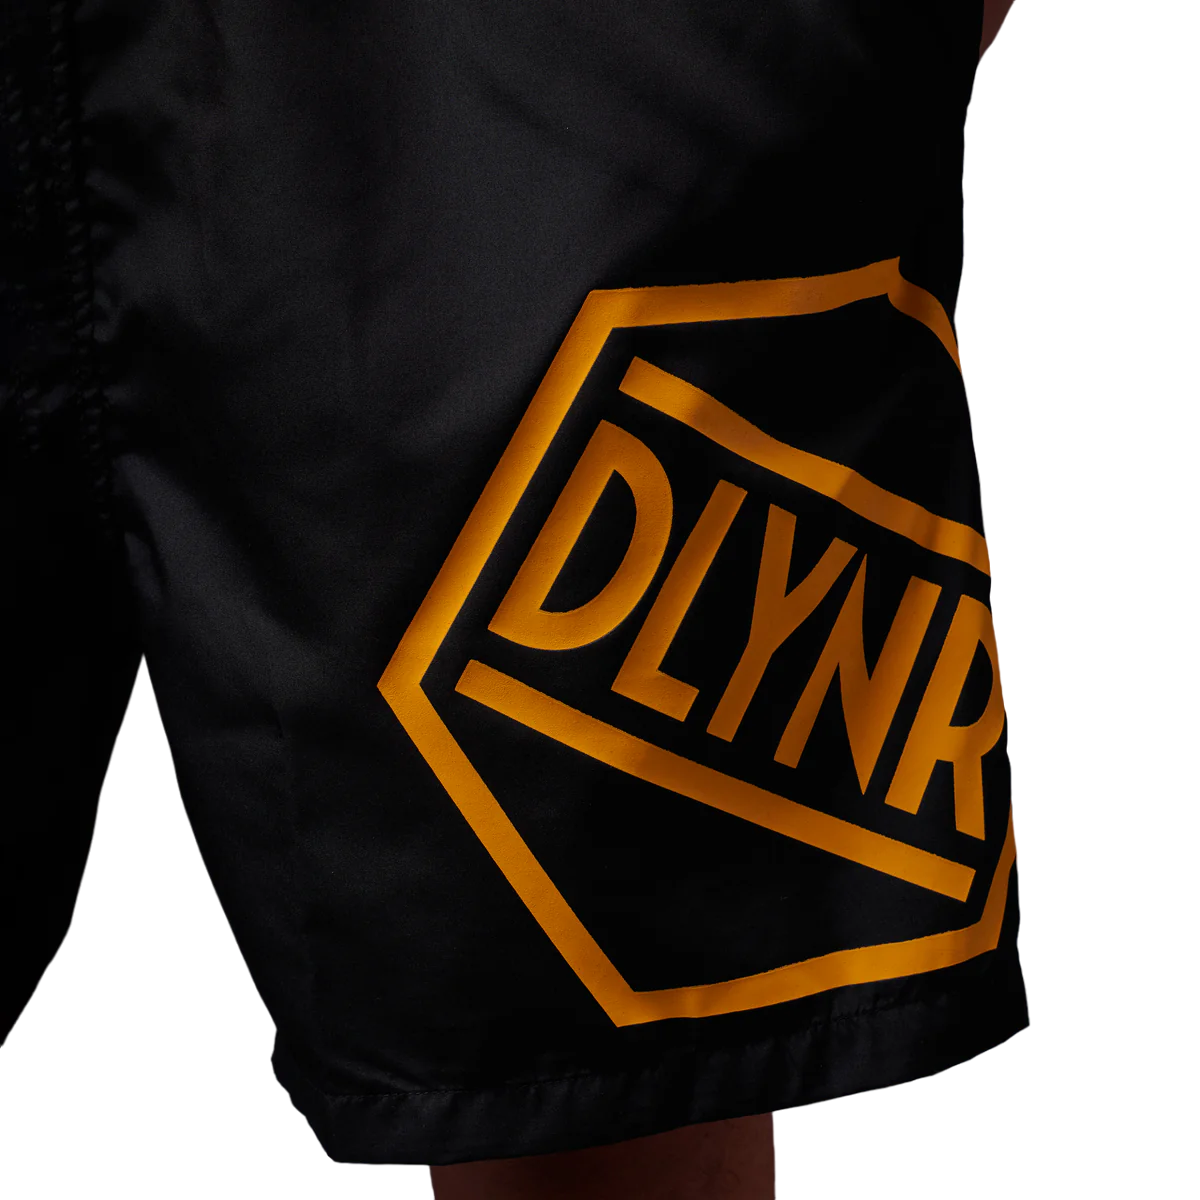 Dolly Noire costume boxer mare Logo Swimshorts ww426-wc-02 nero-arancio